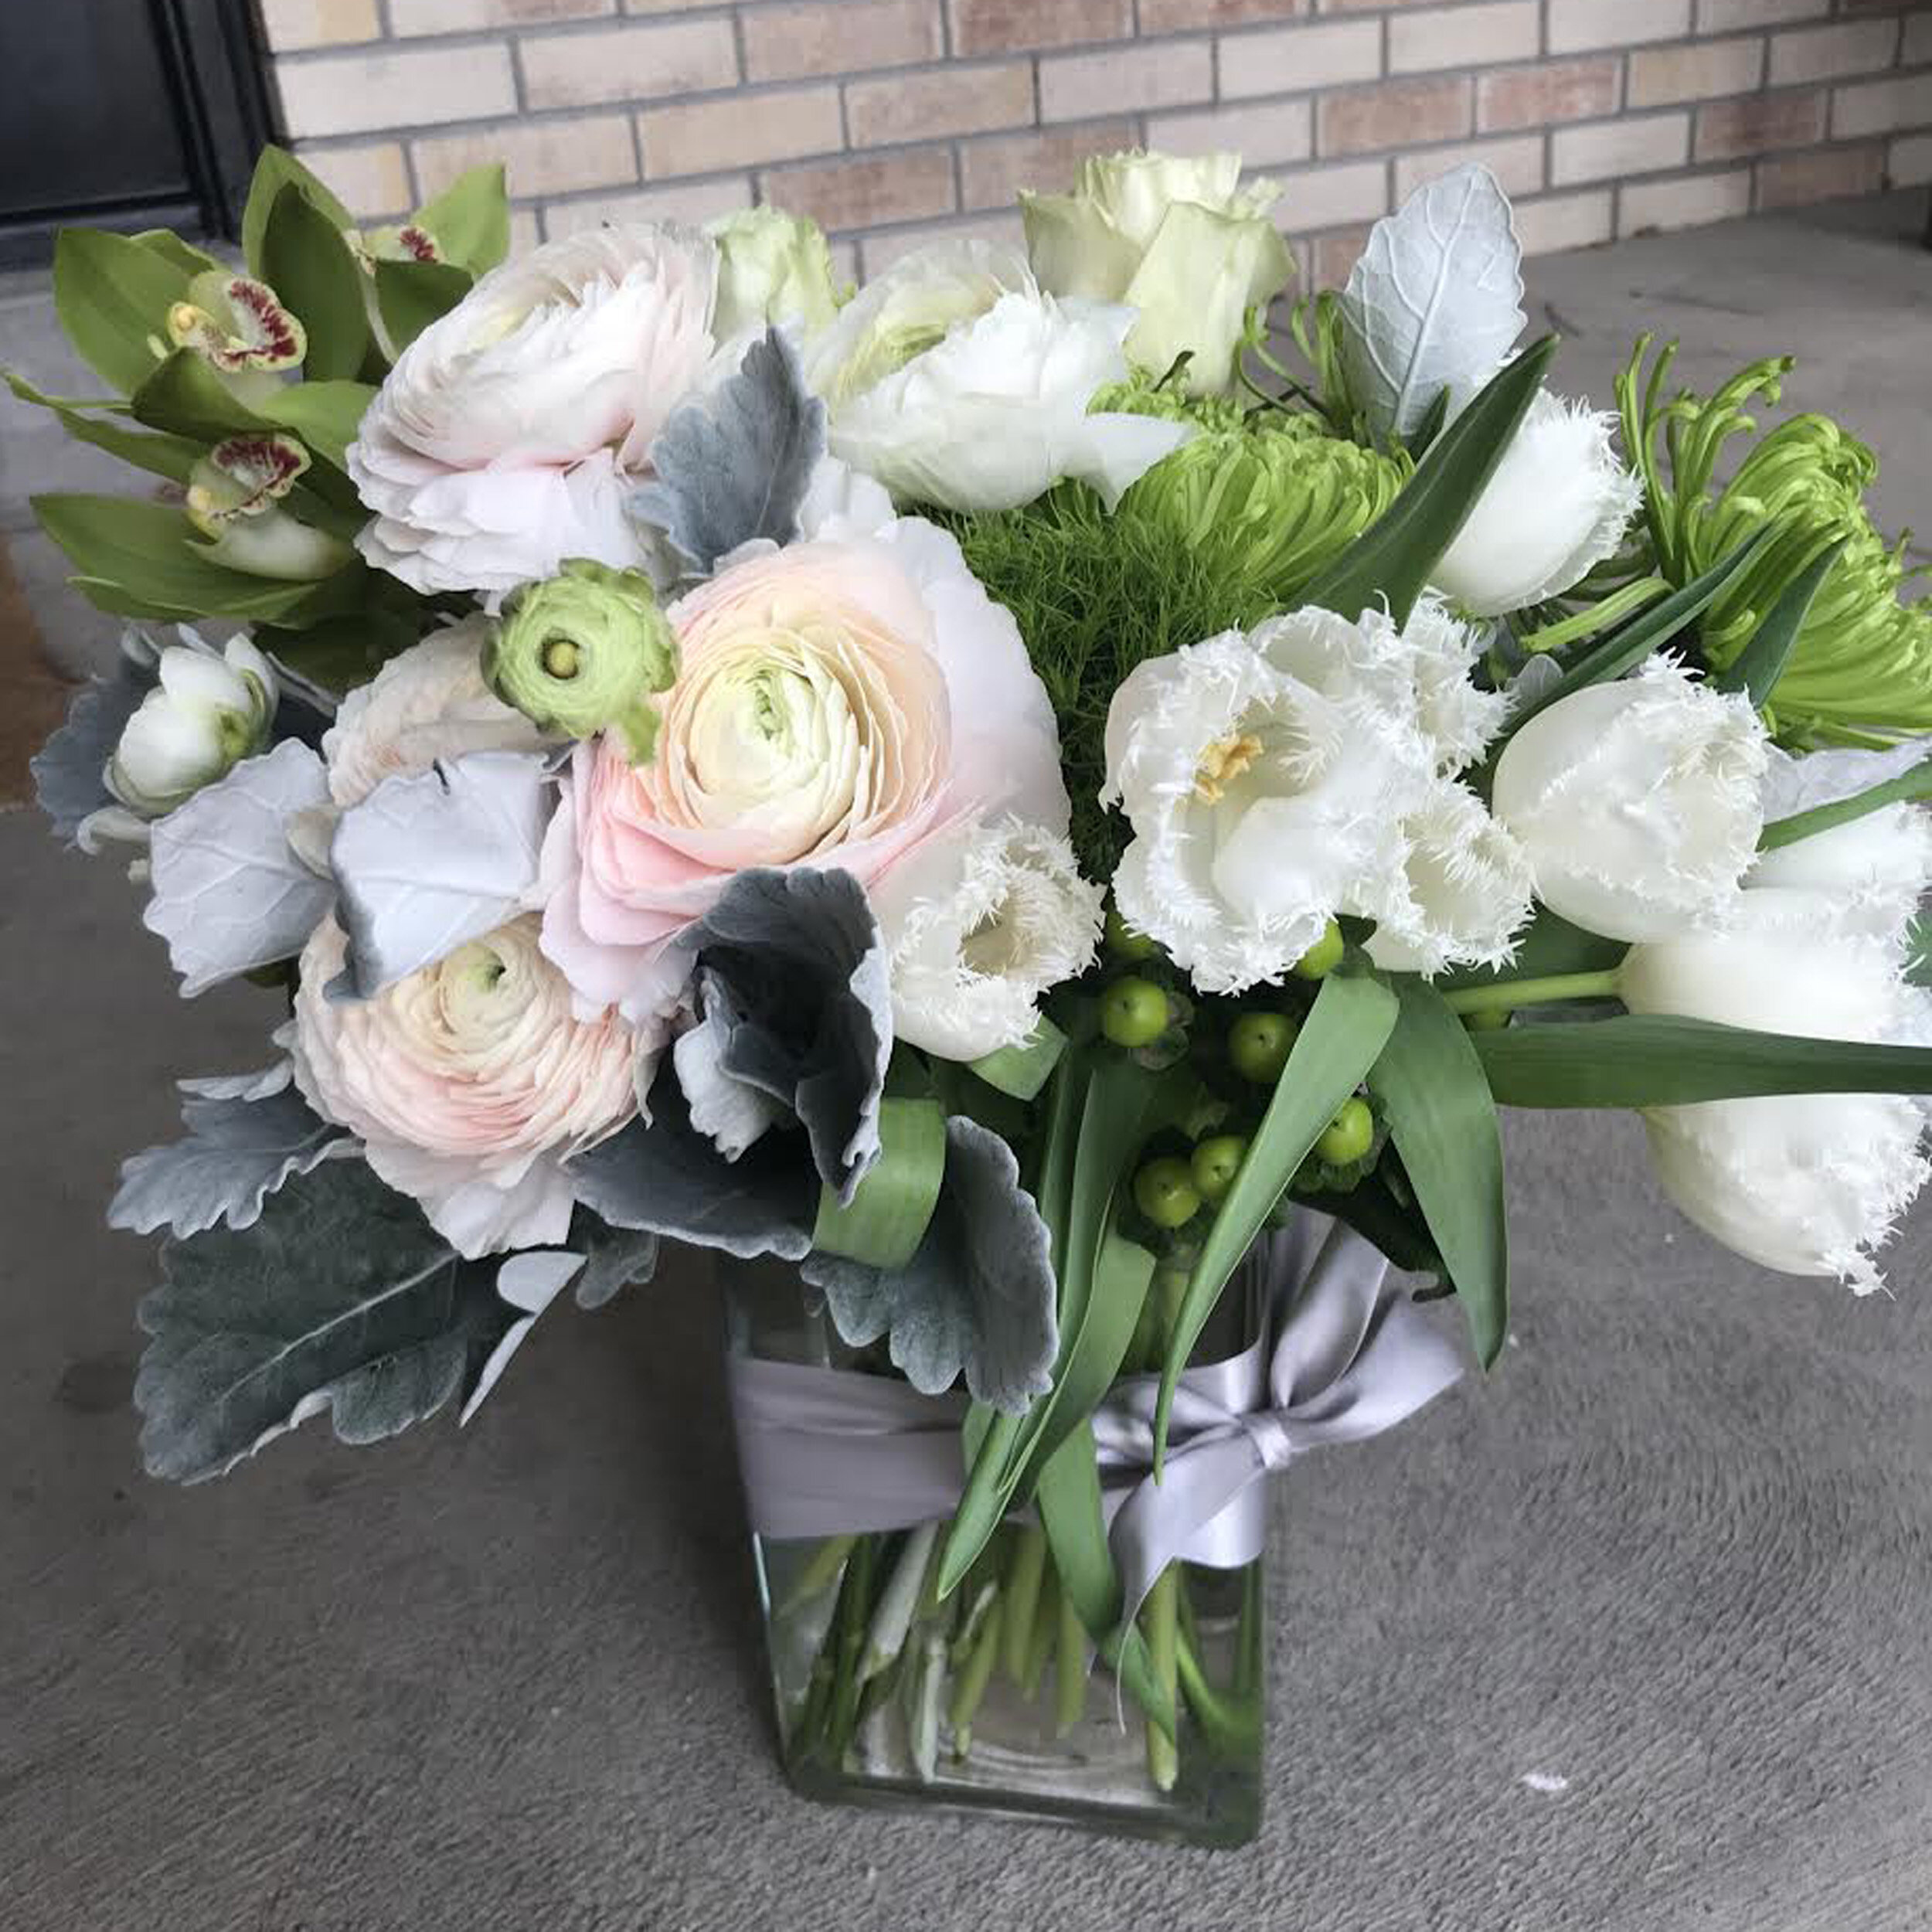 floral arrangements for delivery in denver tech center.jpg